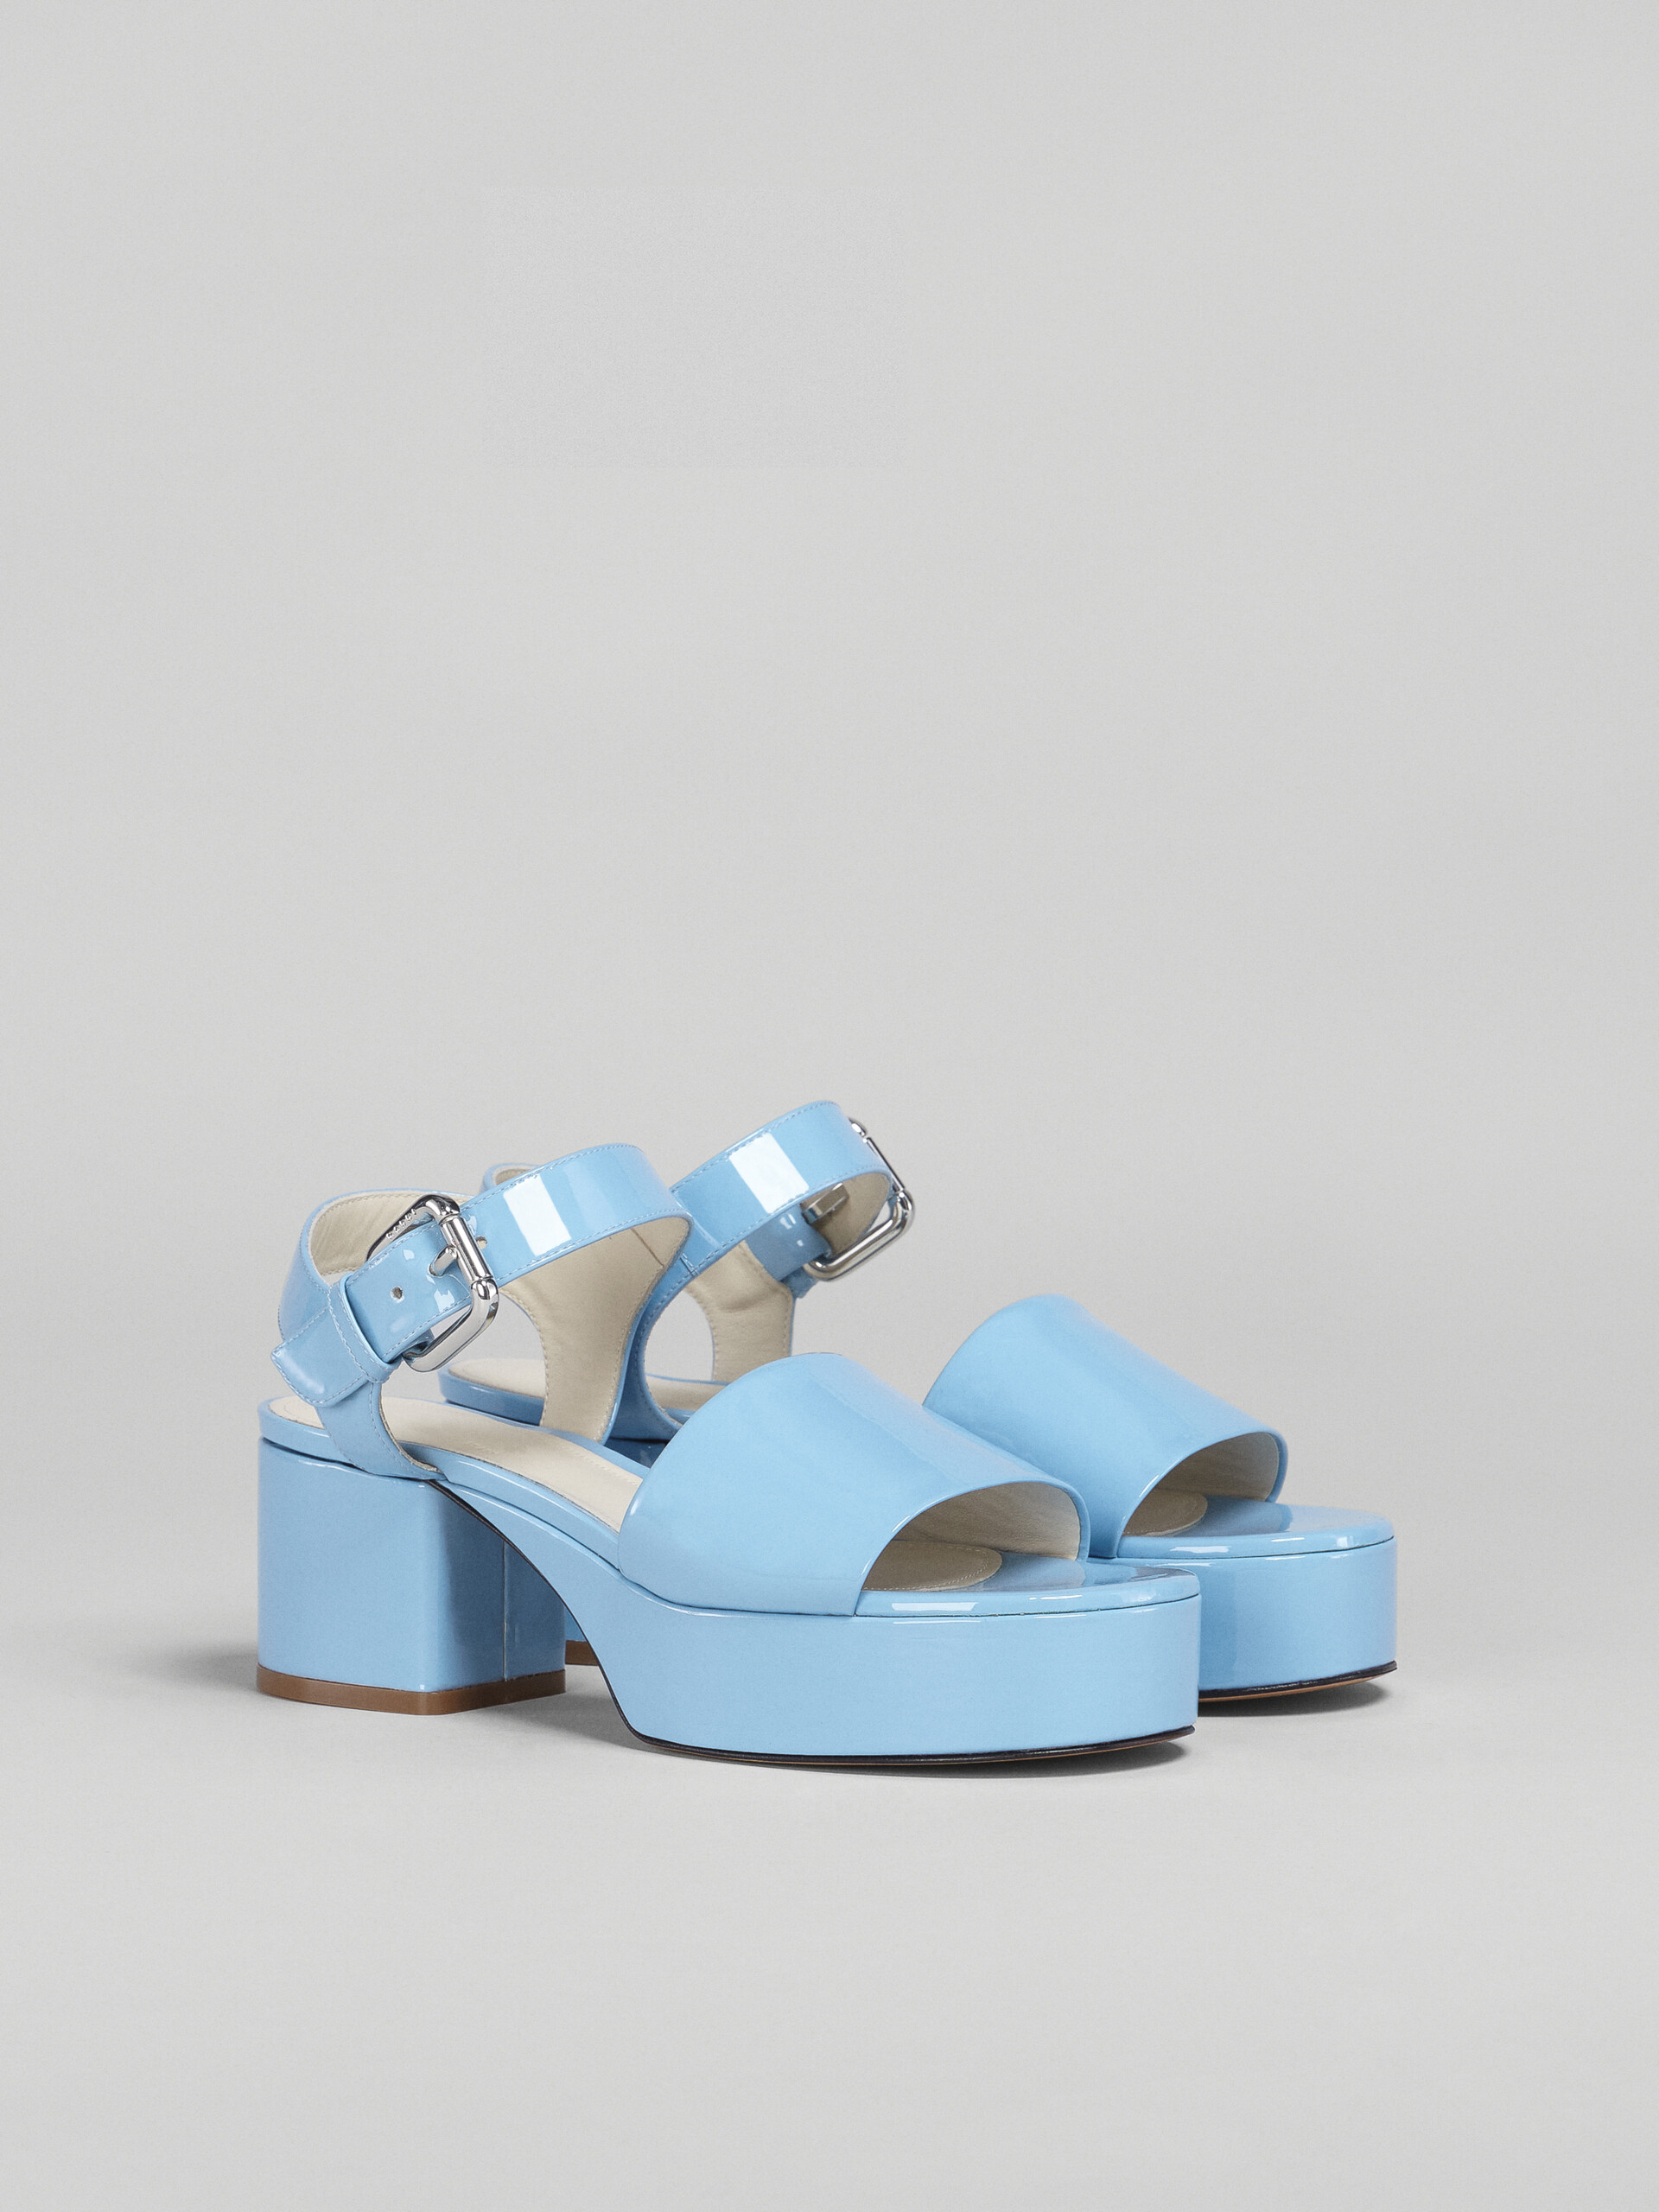 Pale blue patent leather sandal - Sandals - Image 2